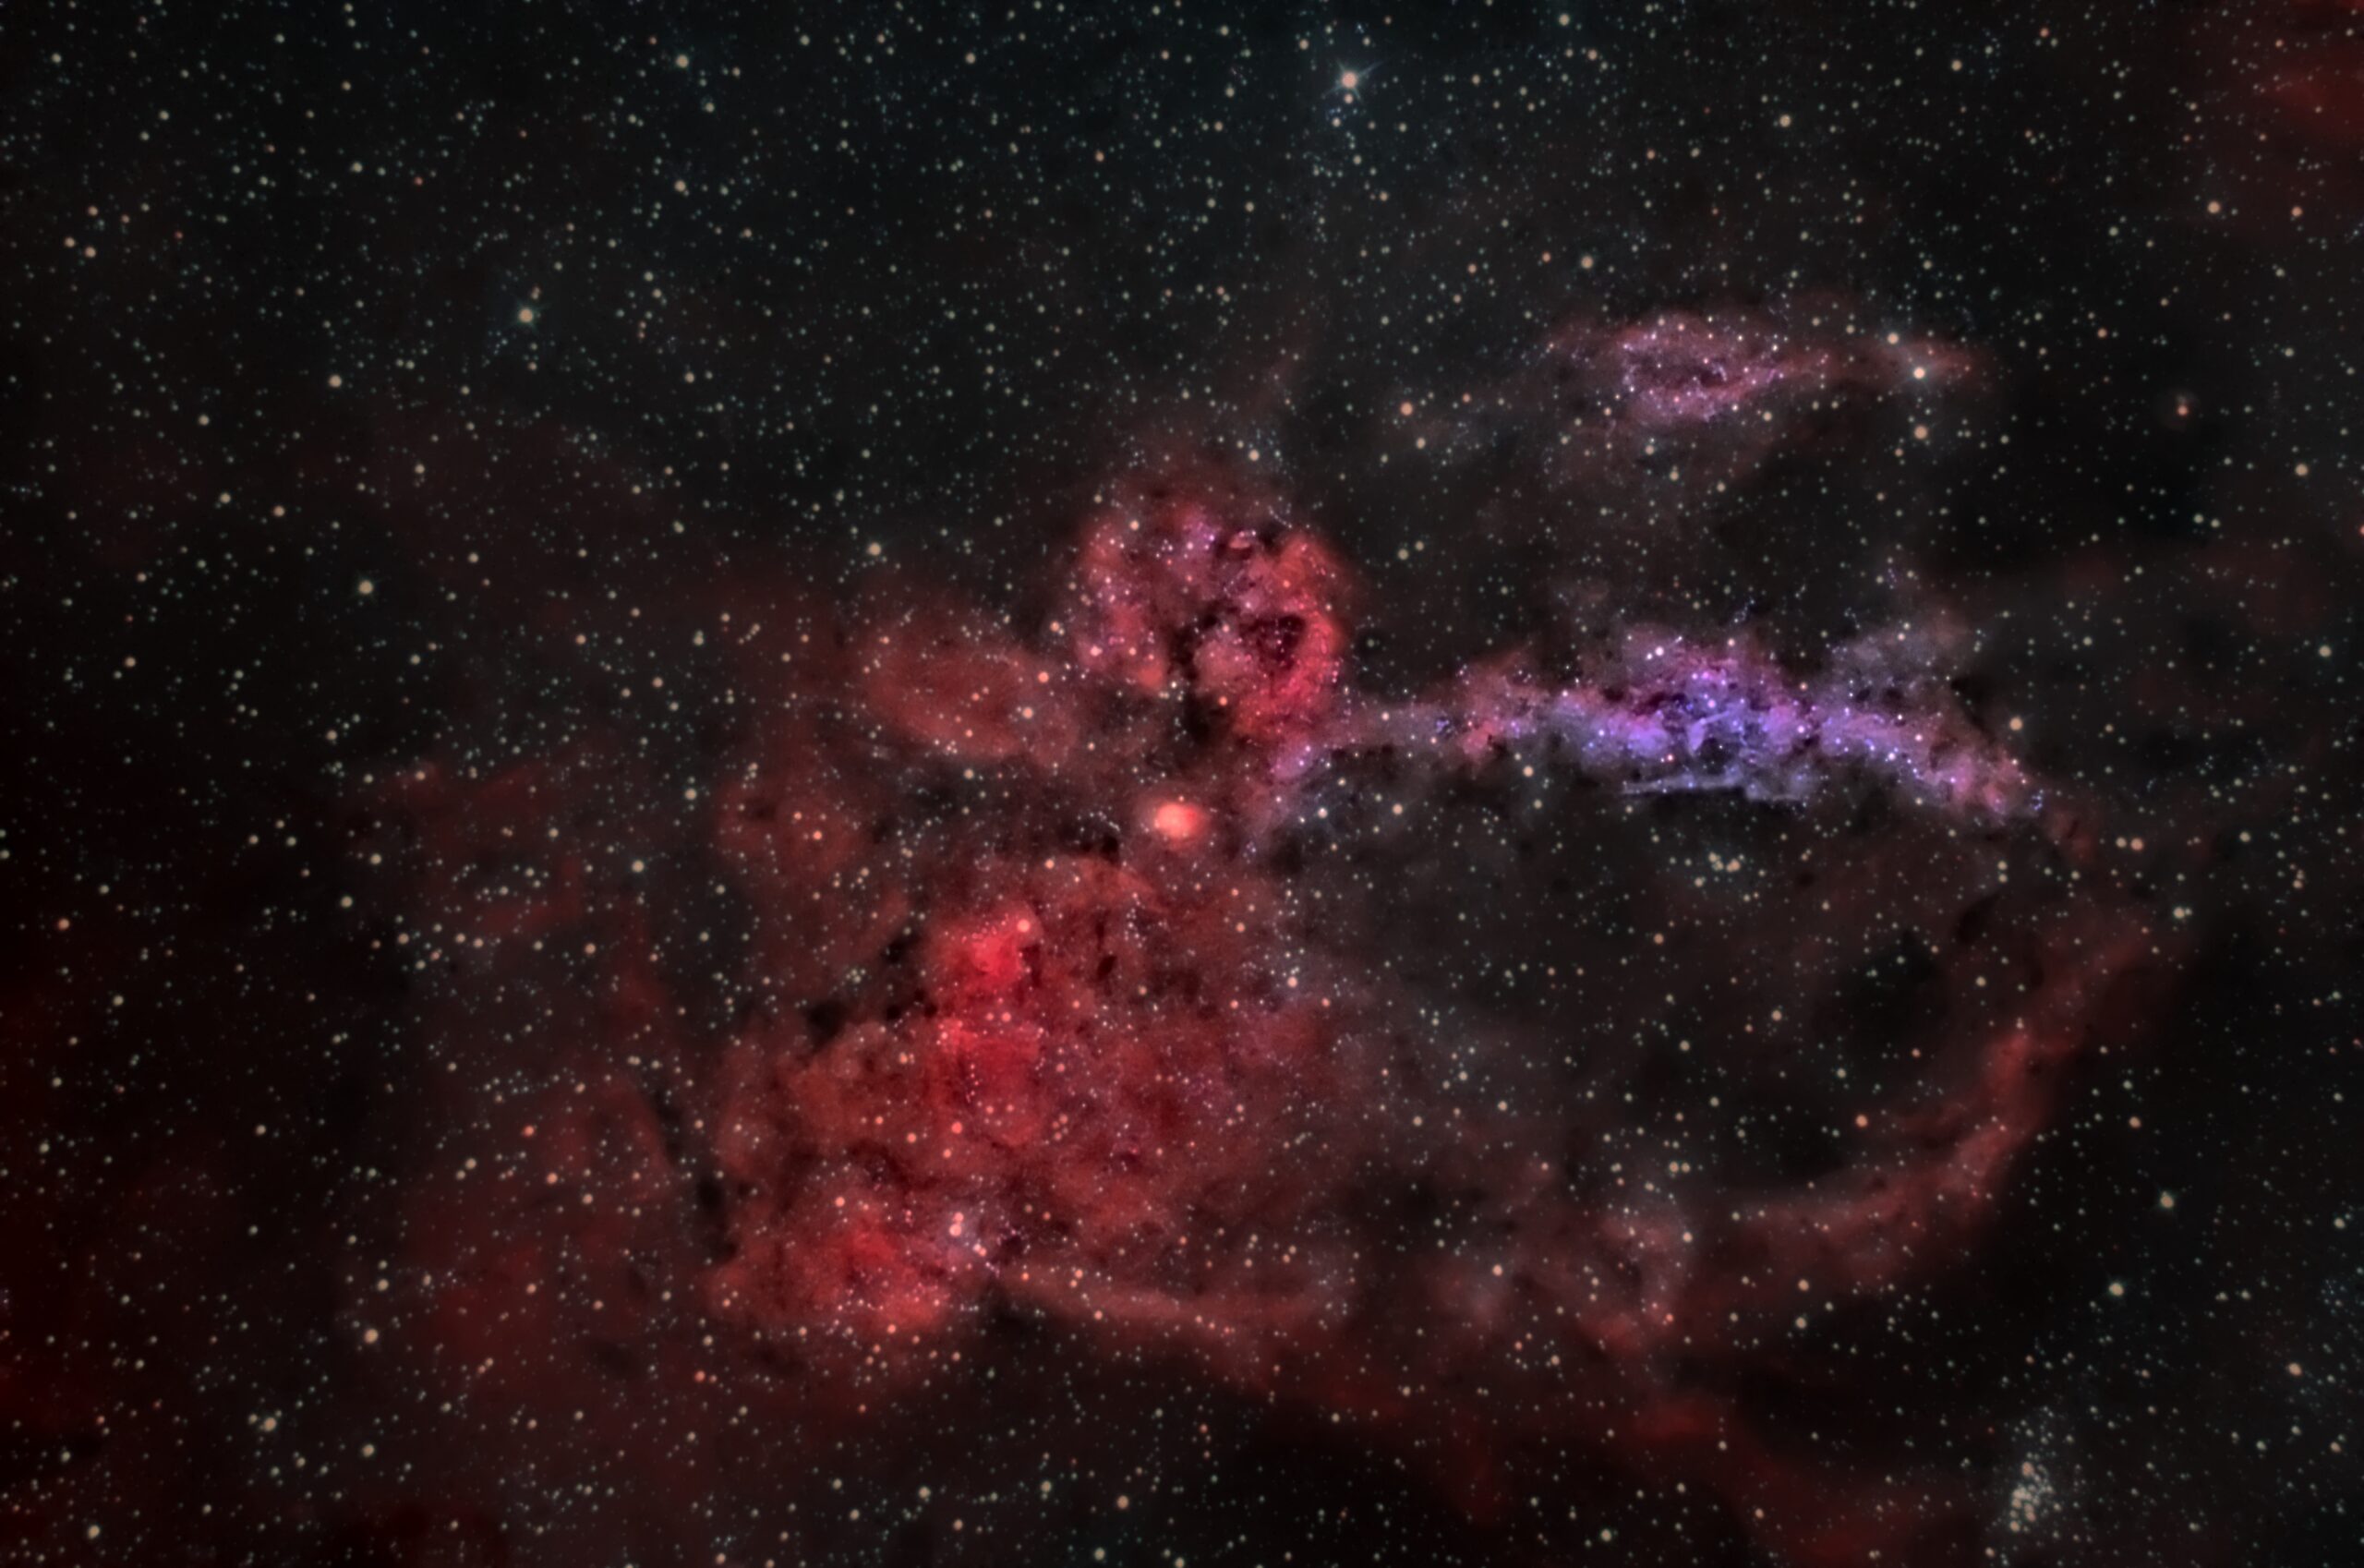 Sh2-157 – Lobster Claw nebula